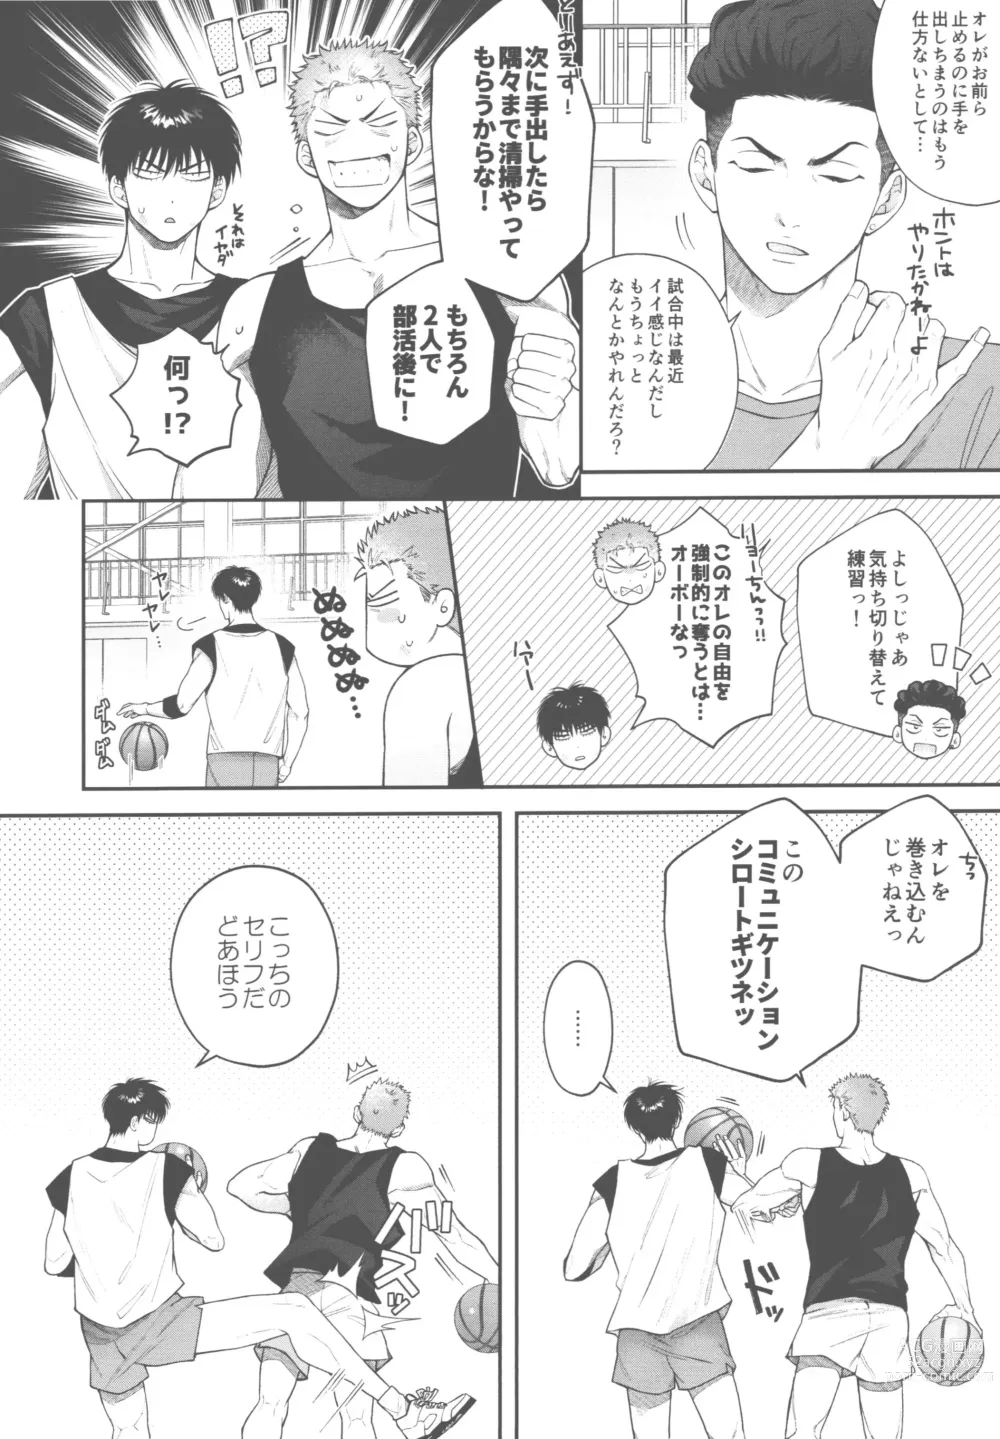 Page 6 of doujinshi doshiroto communication